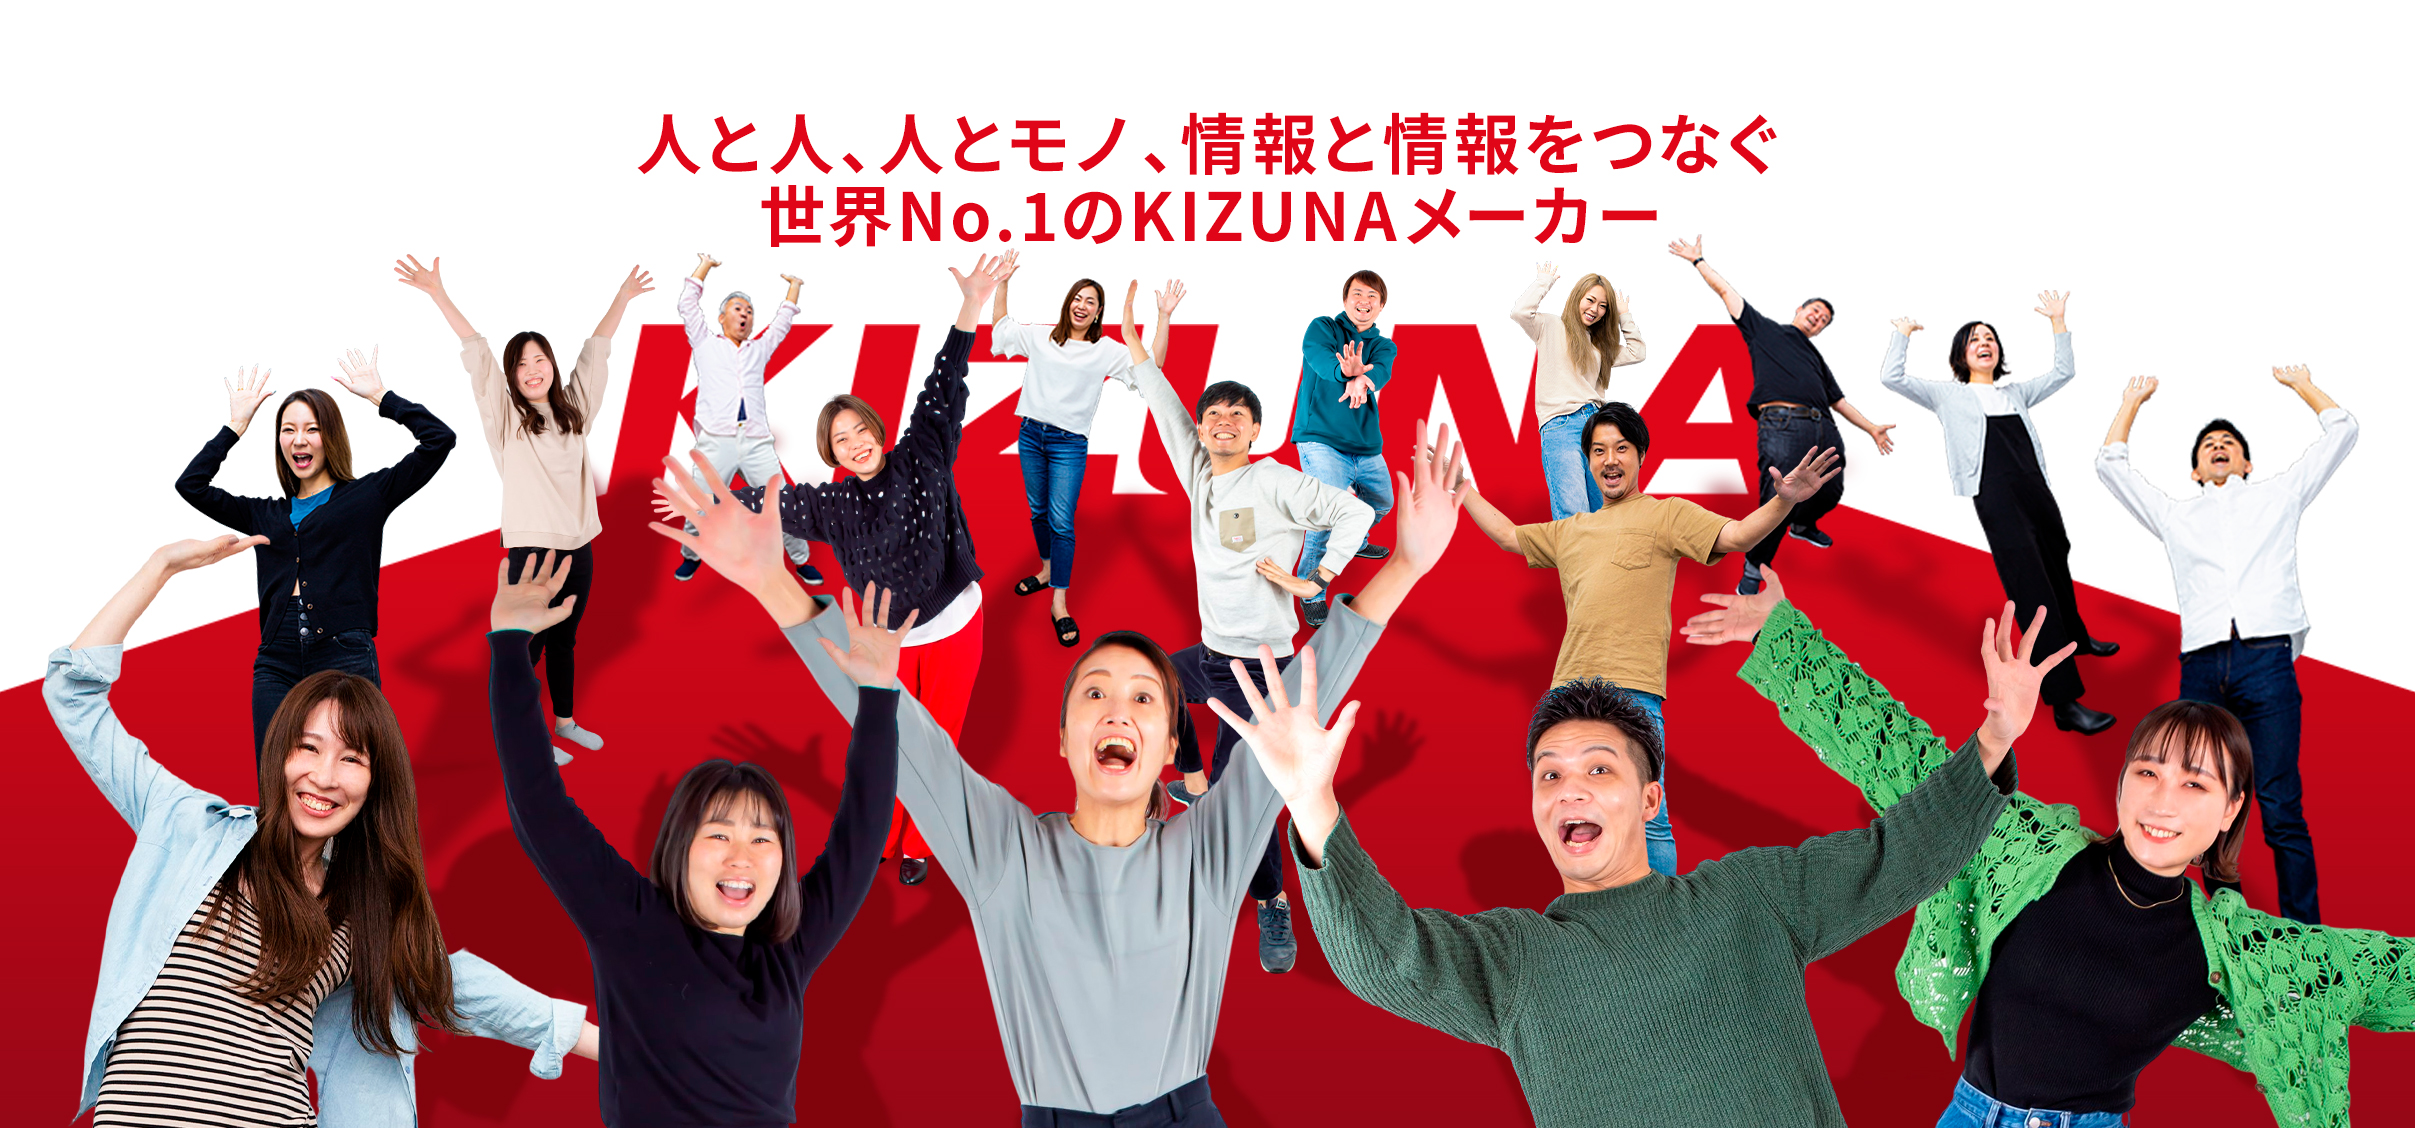 人と人、人とモノ、情報と情報をつなぐ、世界No.1のKIZUNAメーカー